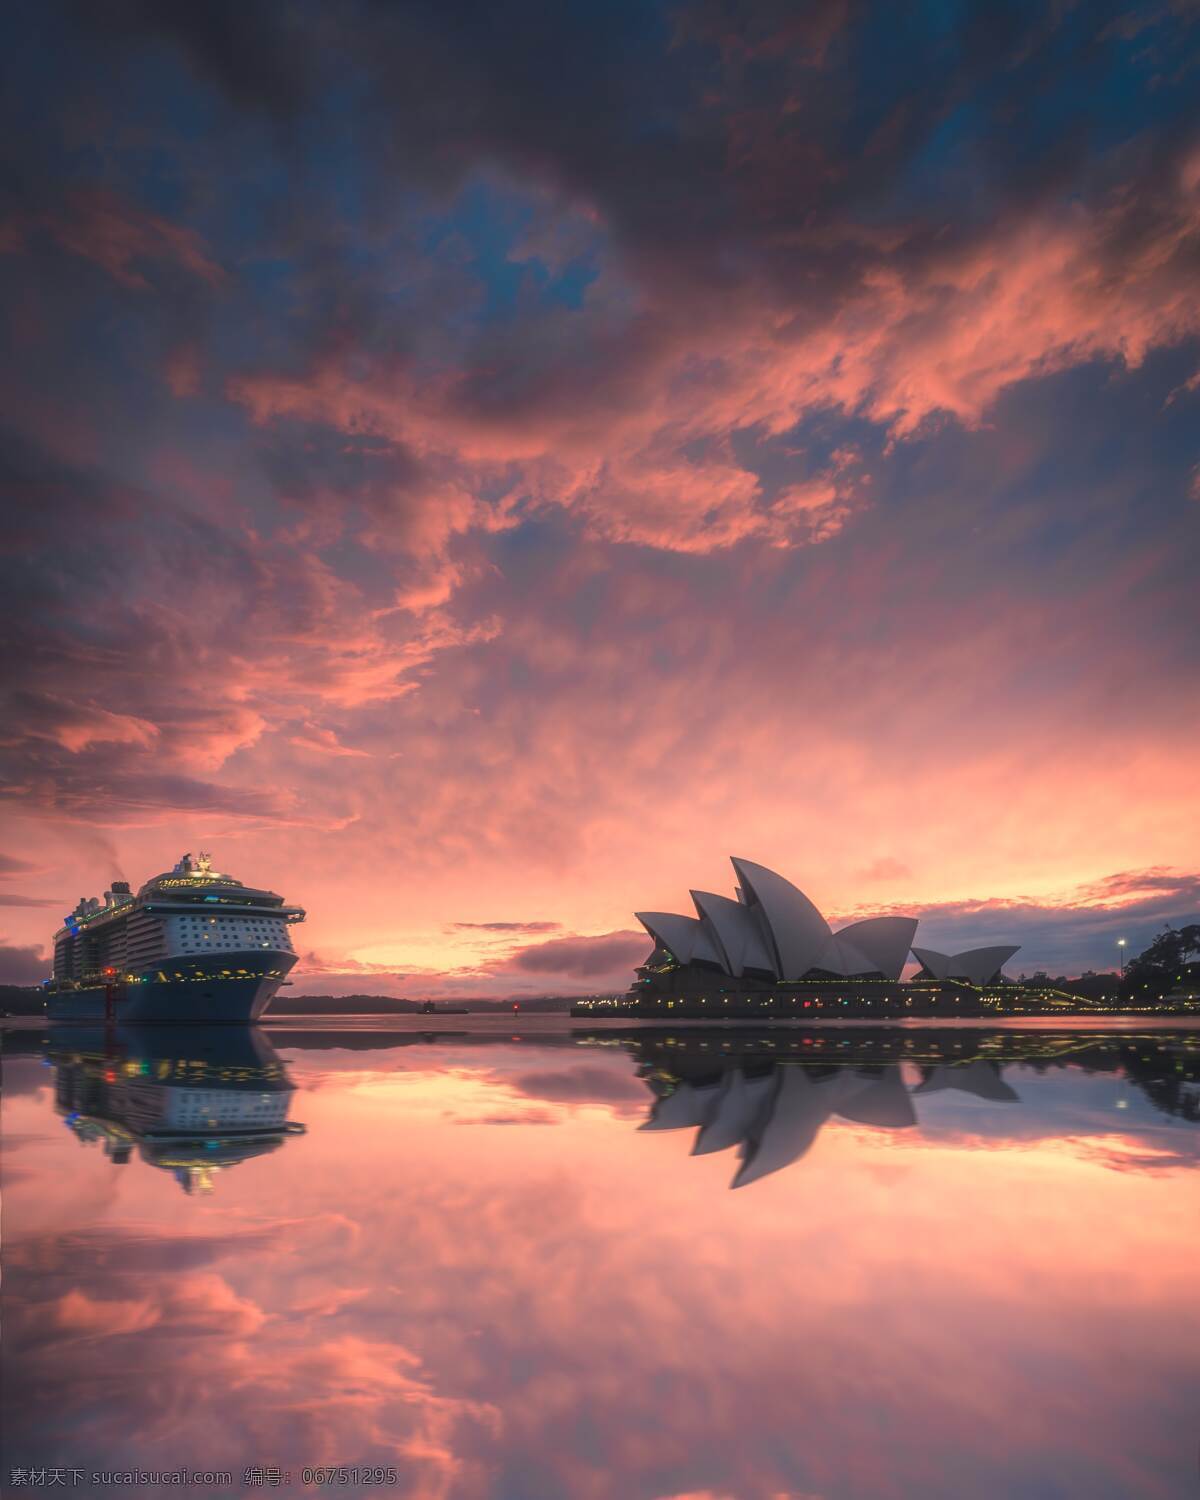 悉尼歌剧院 欧美 悉尼 歌剧院 日落 彩云 大海 海岸 游轮 温馨 拍摄 摄影类 自然景观 自然风景